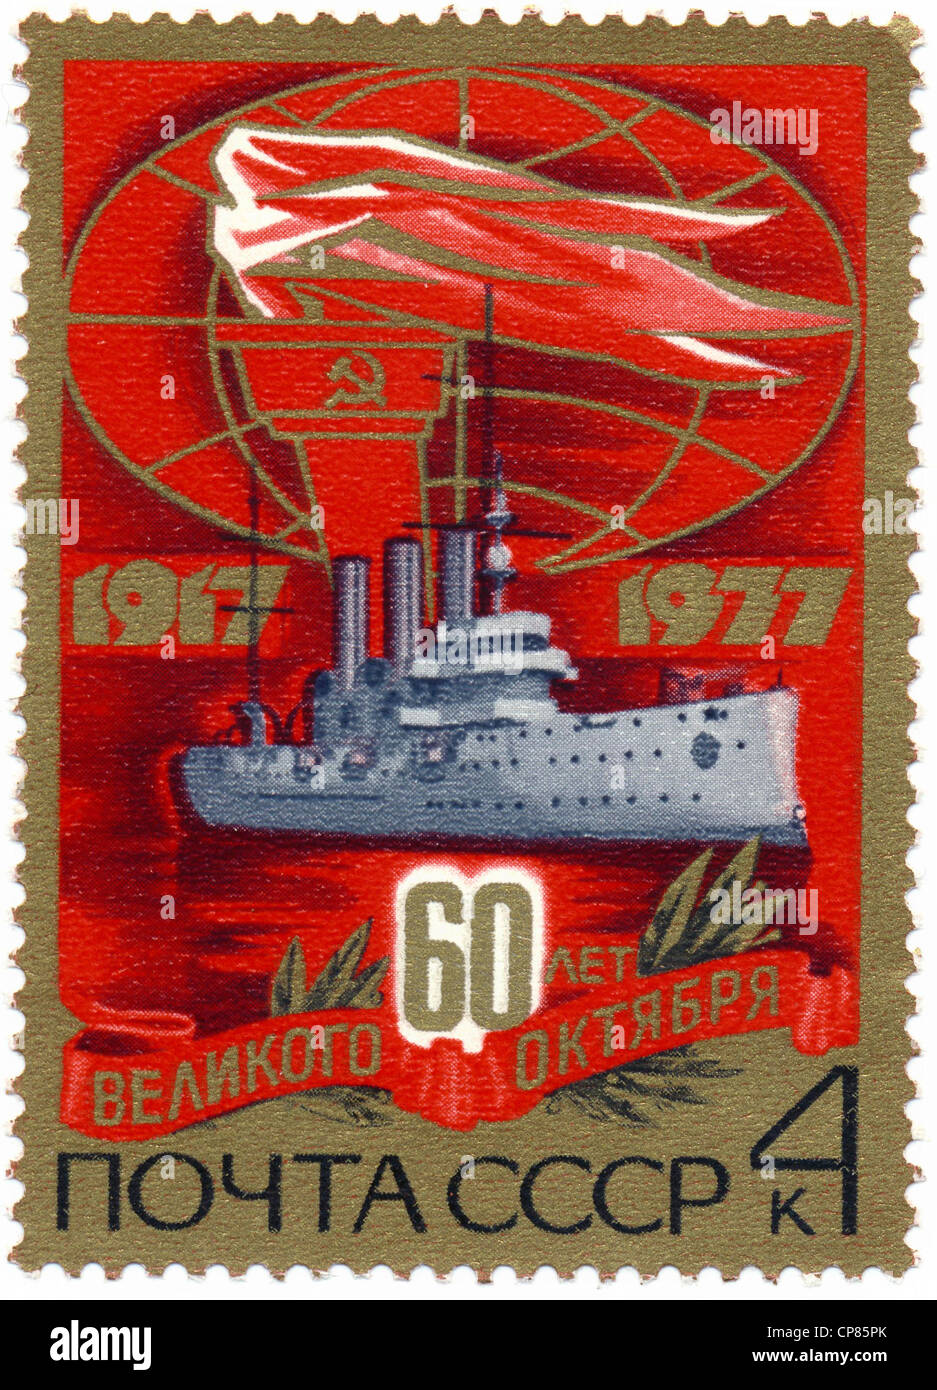 Timbre historique, le 60e anniversaire de la révolution d'octobre, navire de guerre avec le flambeau du socialisme international, 1977 Banque D'Images